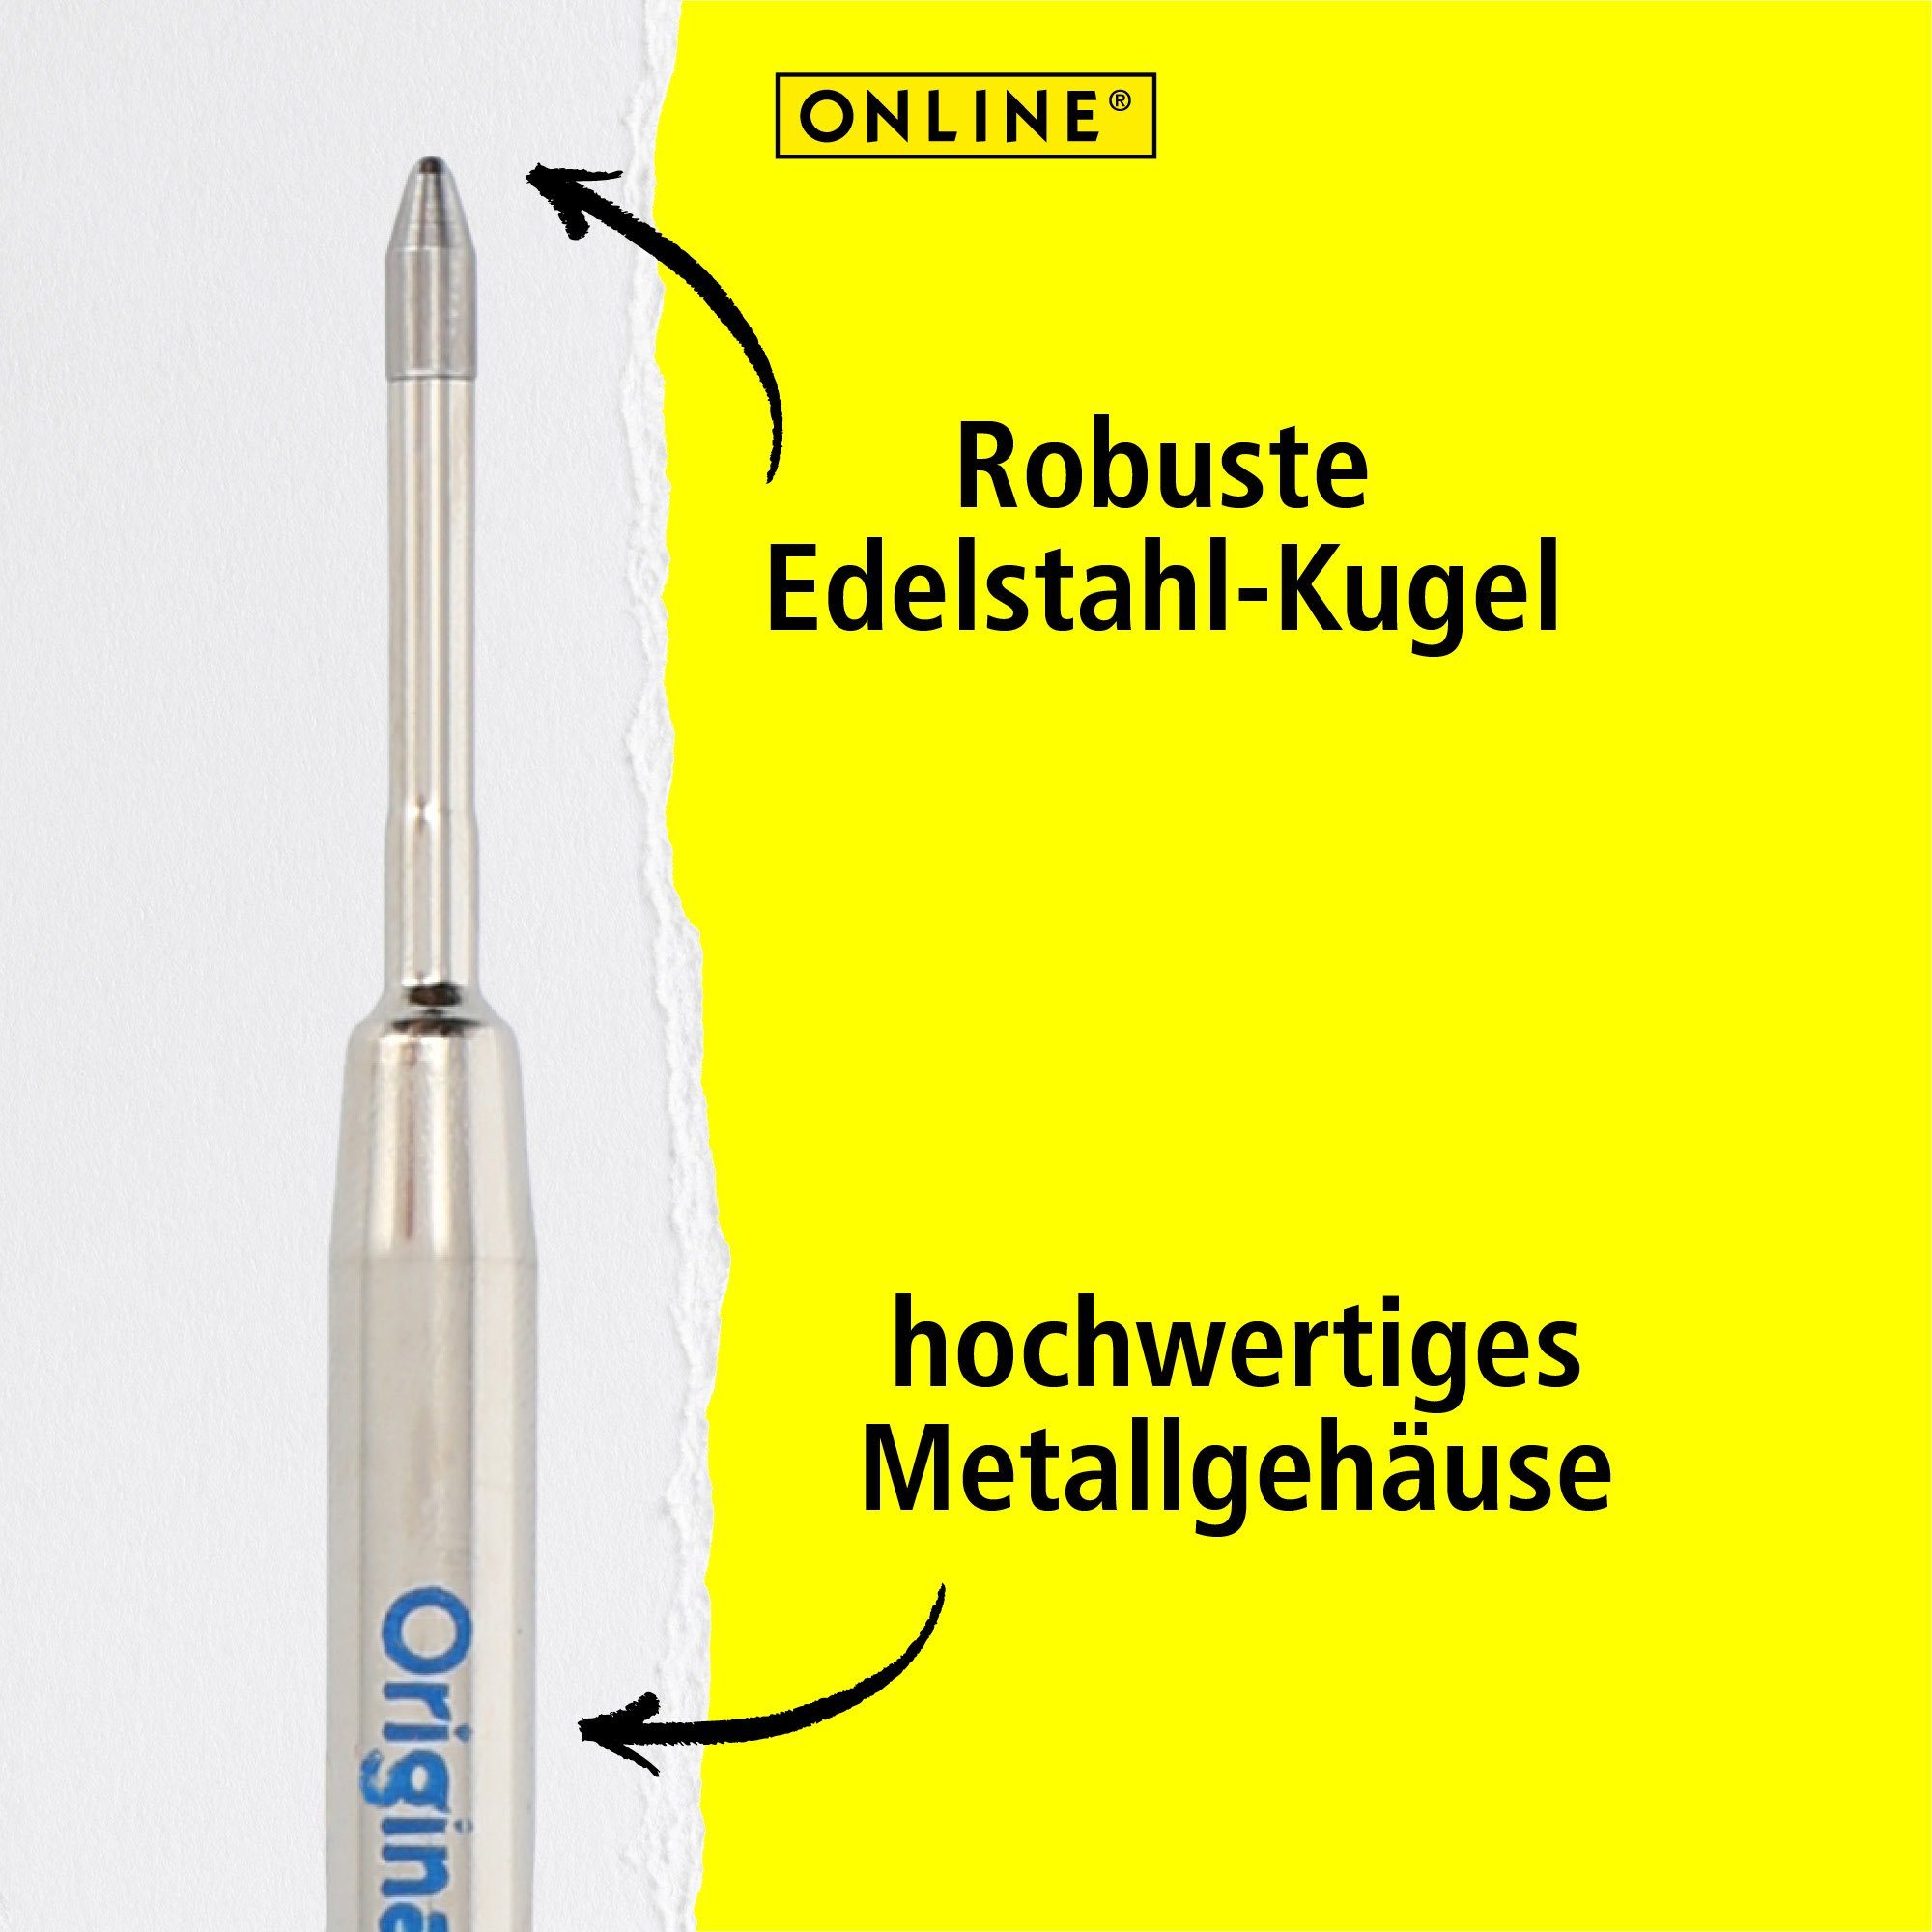 G2-Format, Schweiz Kugelschreiber blau für in der Standard-Kugelschreiber, hergestellt Kugelschreiberminen, Online Pen